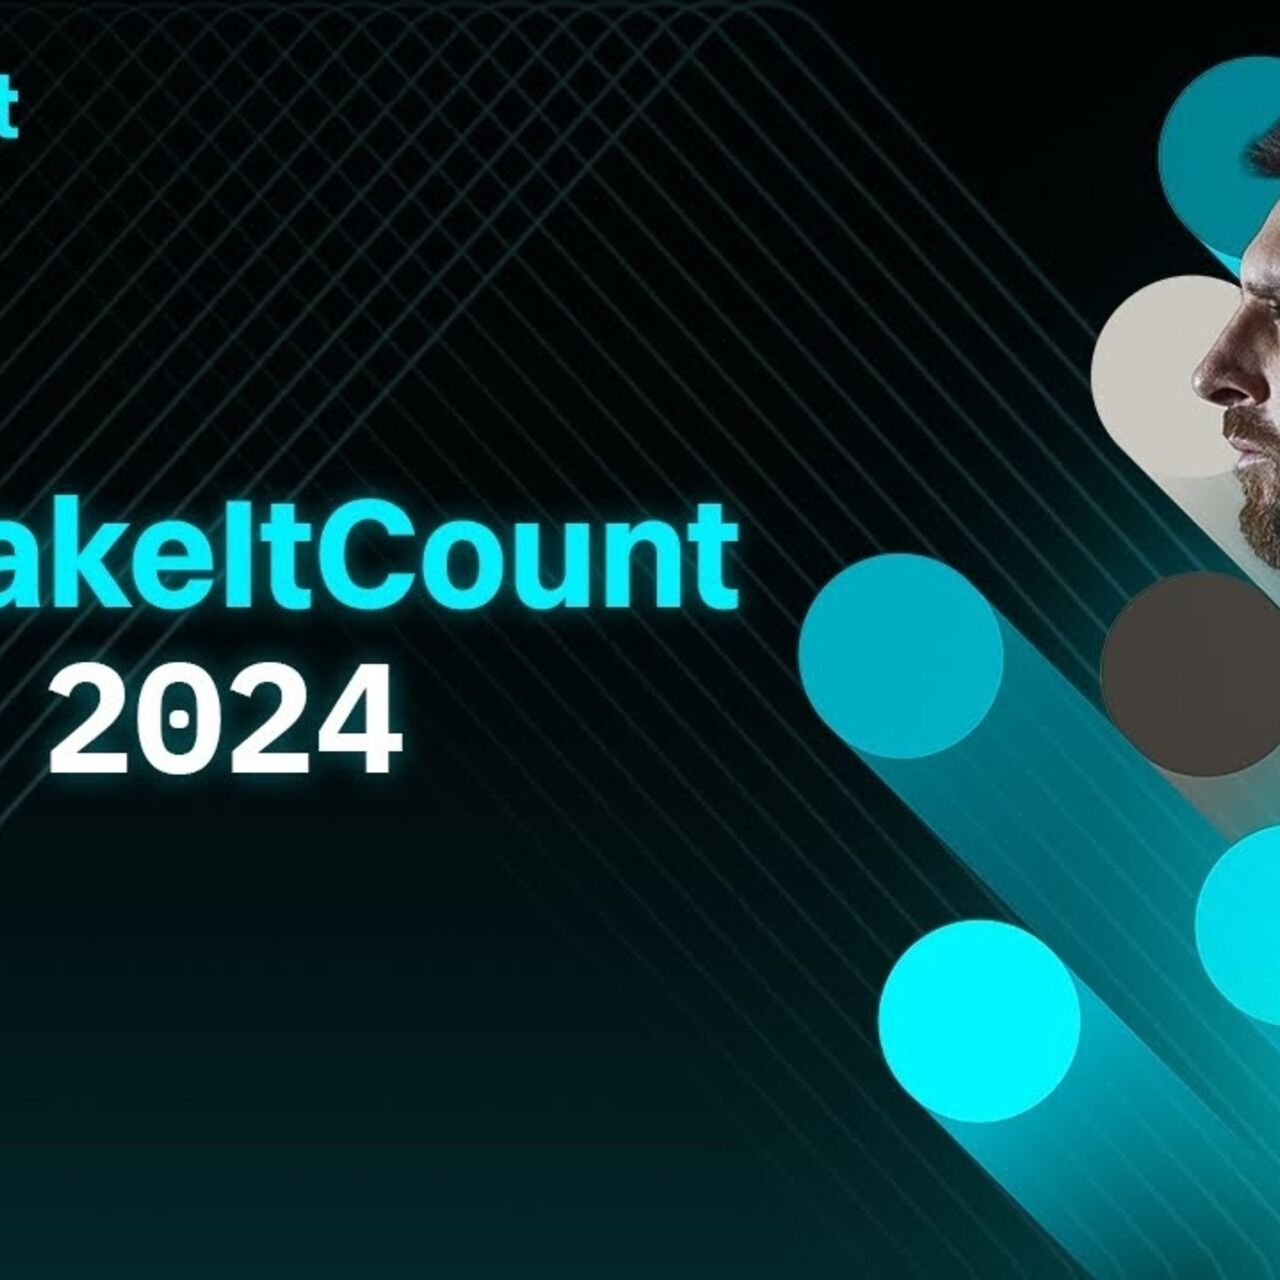 Лионел Меси: филмът #MakeItCount 2024 символизира основните ценности, споделяни от крипто борсата Bitget и аржентинския футболист